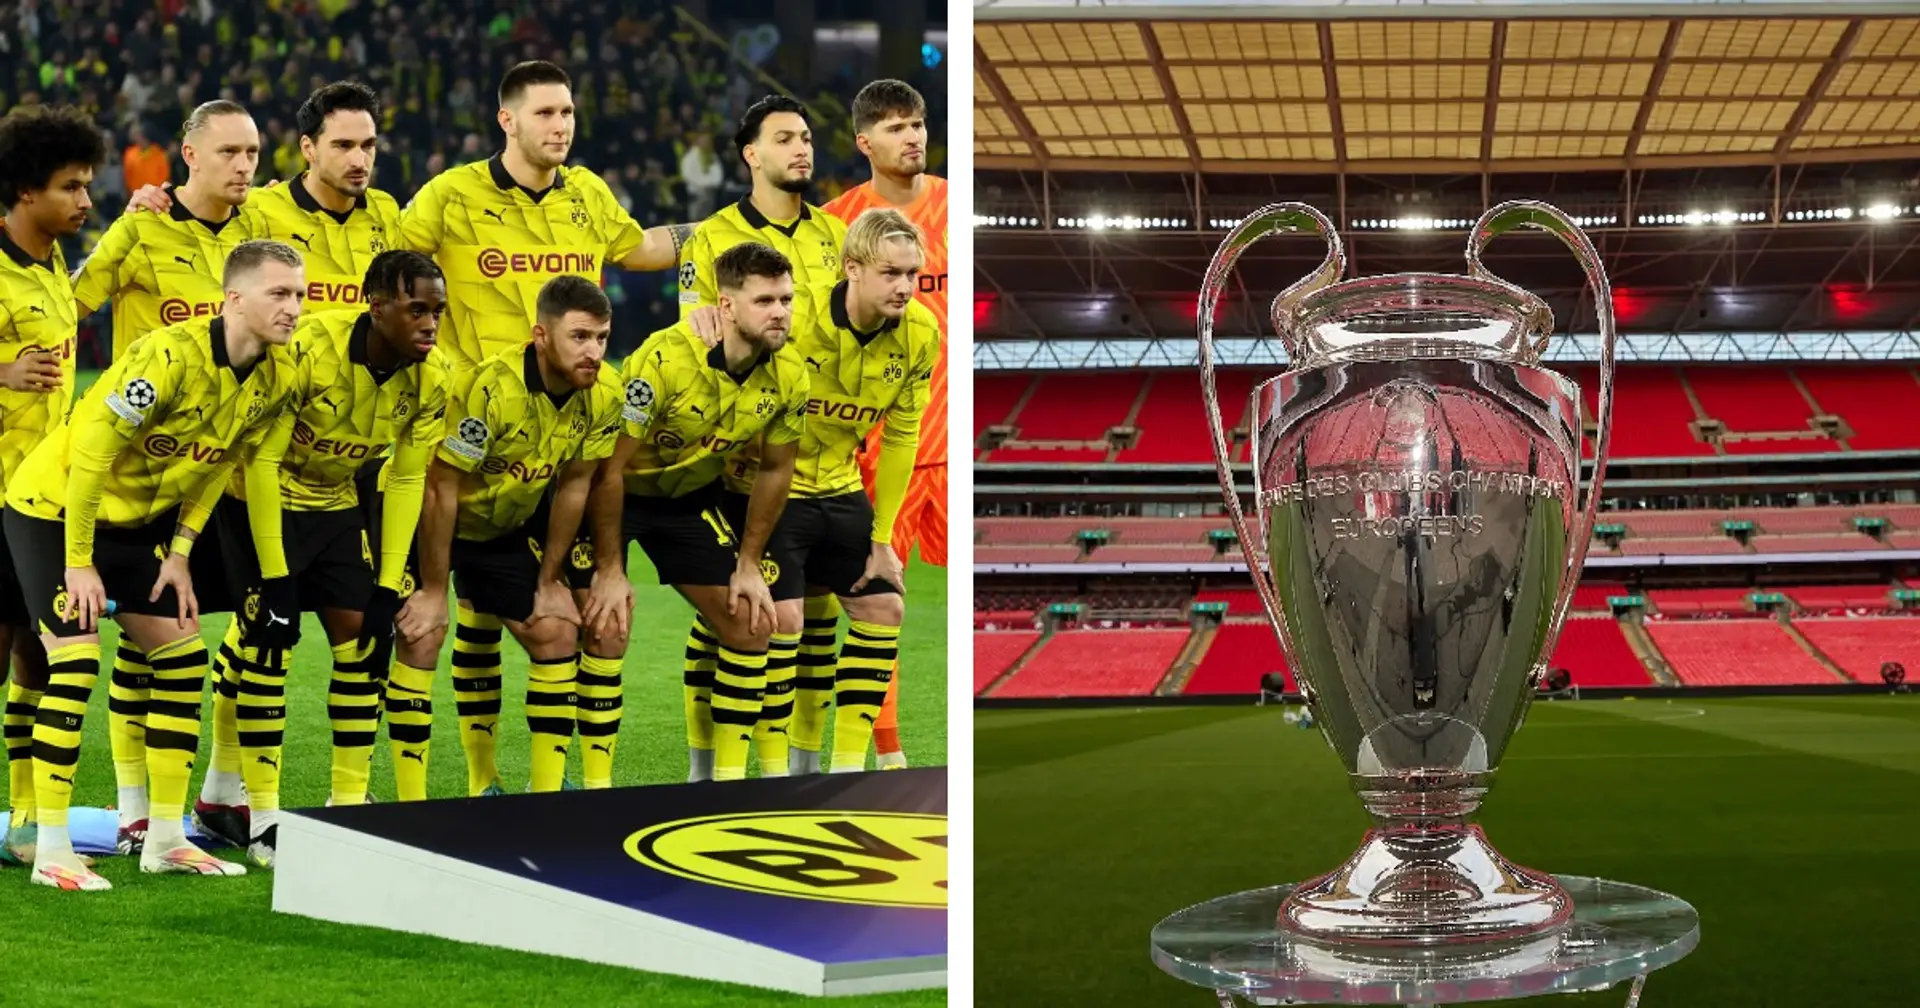 Le Borussia Dortmund gagnerait plus d'argent en perdant la finale de la Ligue des champions contre le Real Madrid qu'en la gagnant - Explication